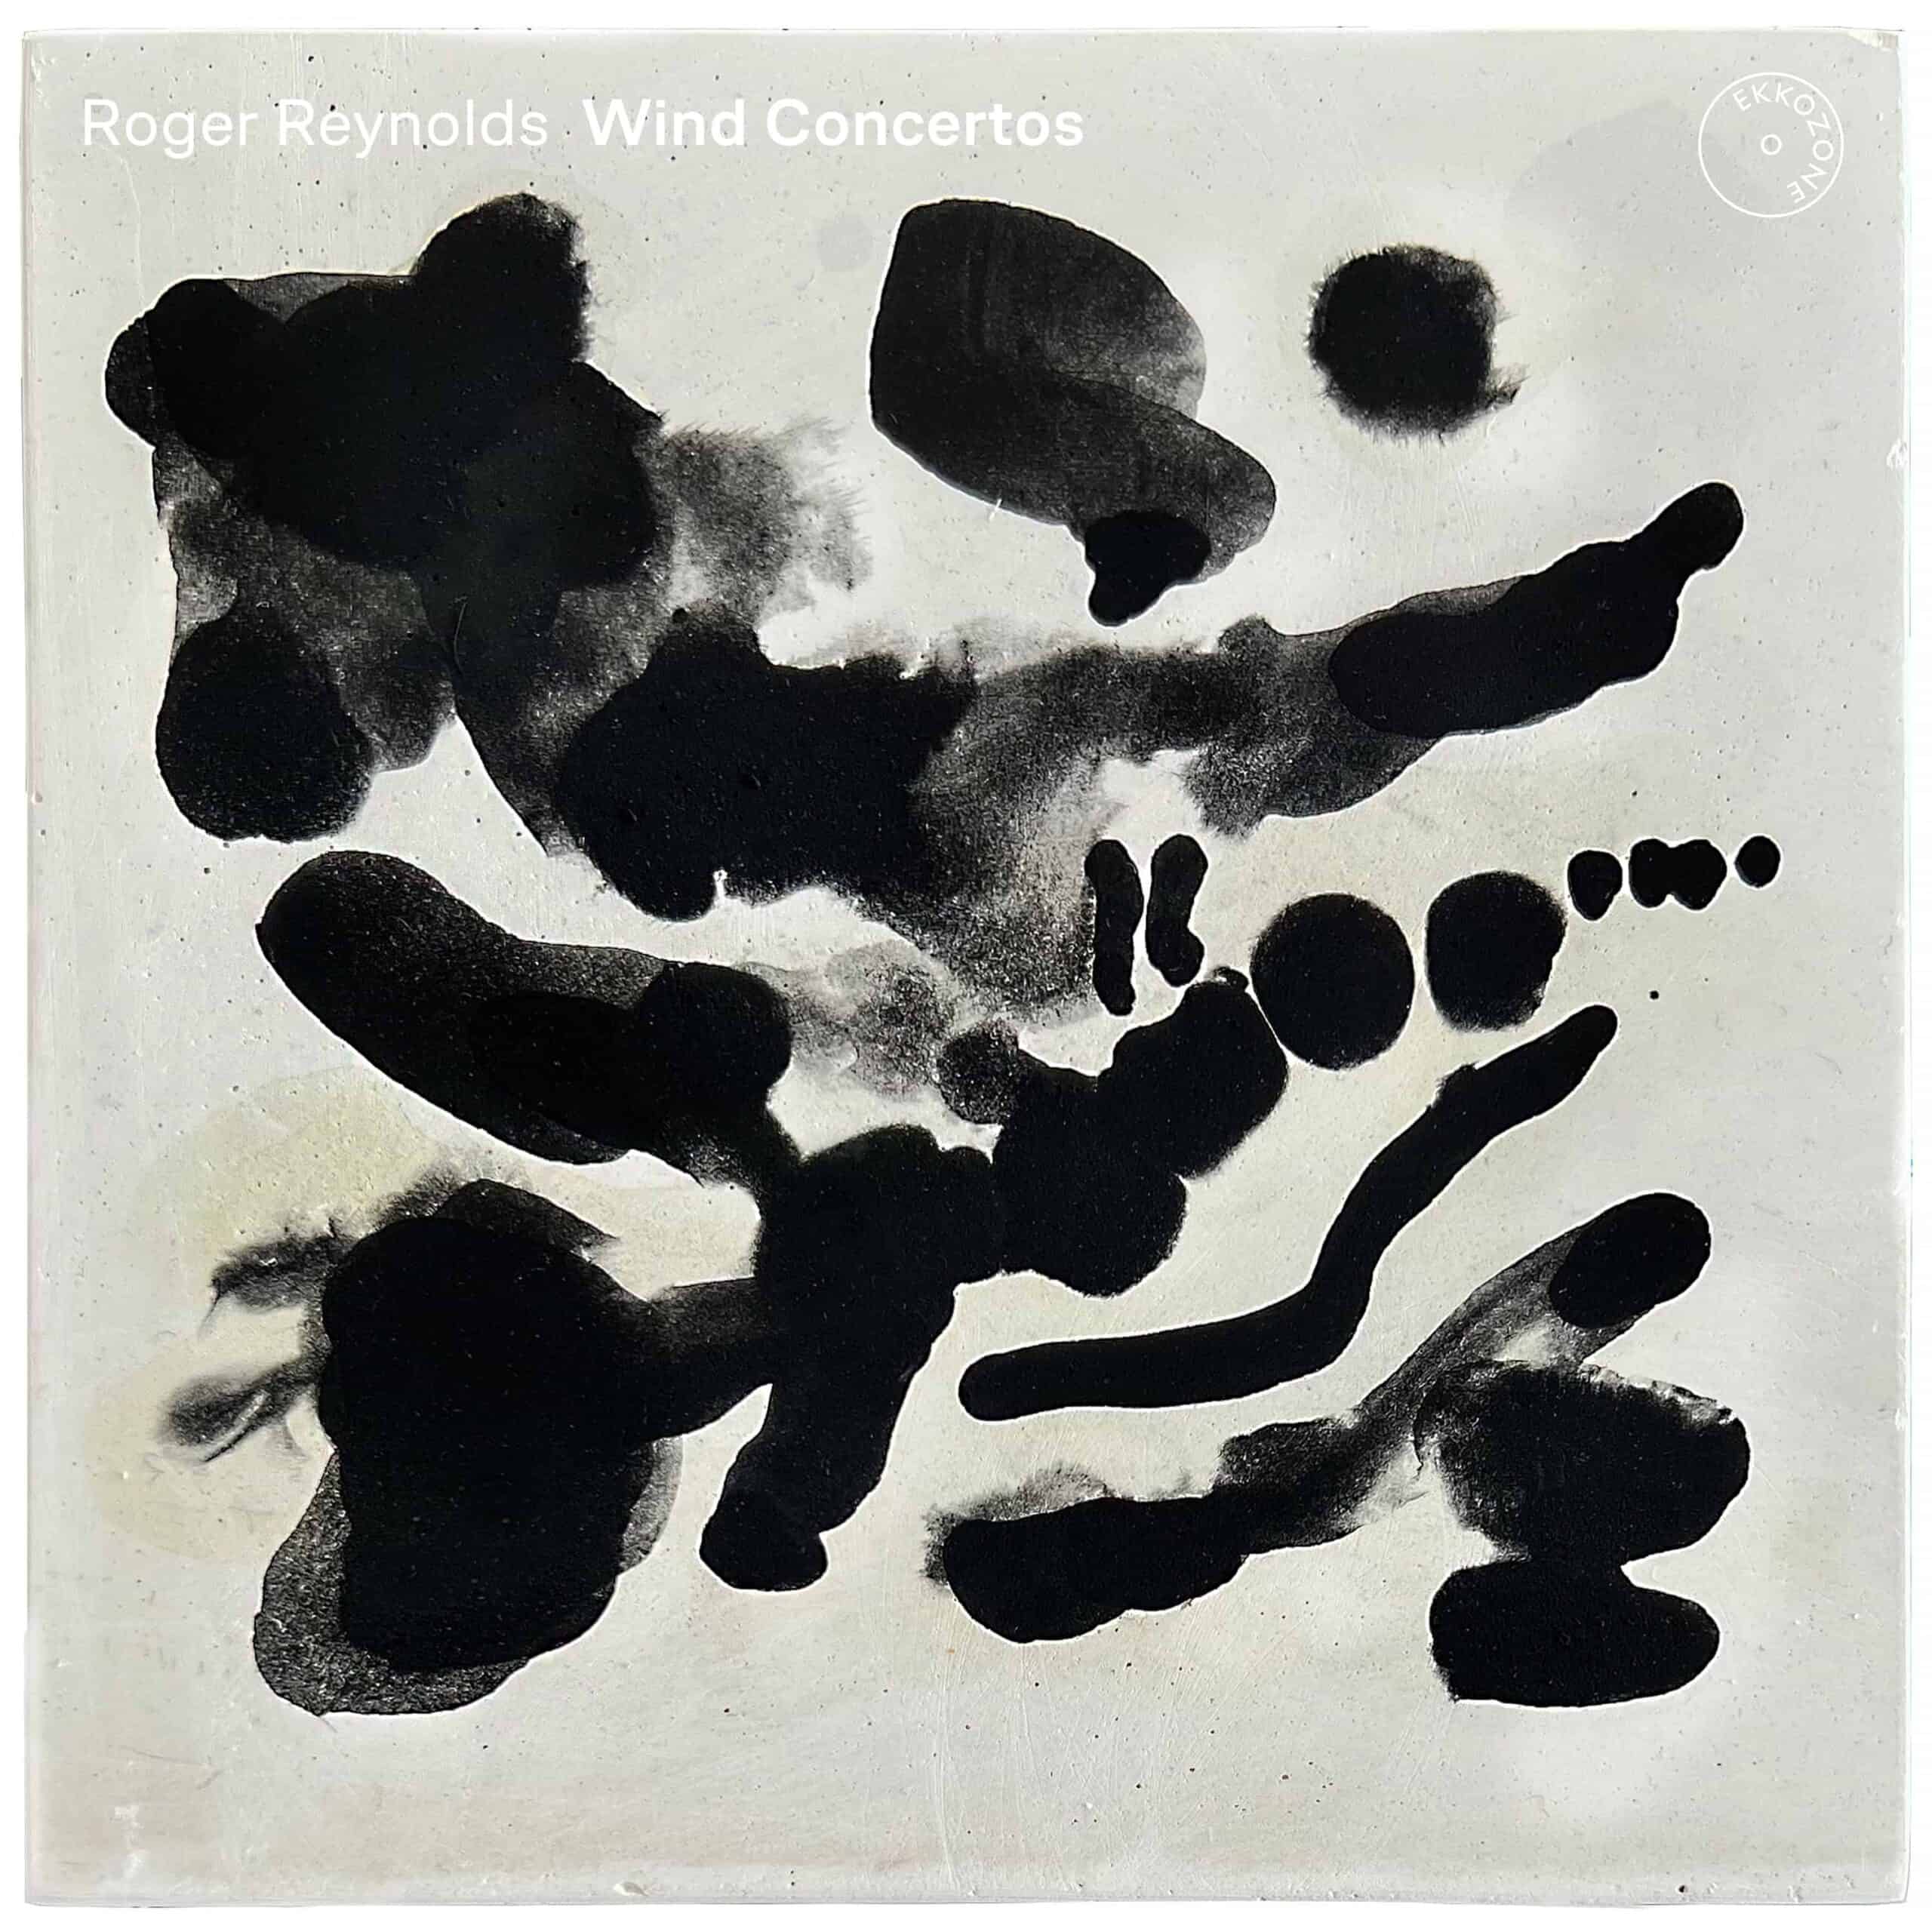 Roger Reynolds Wind Concertos